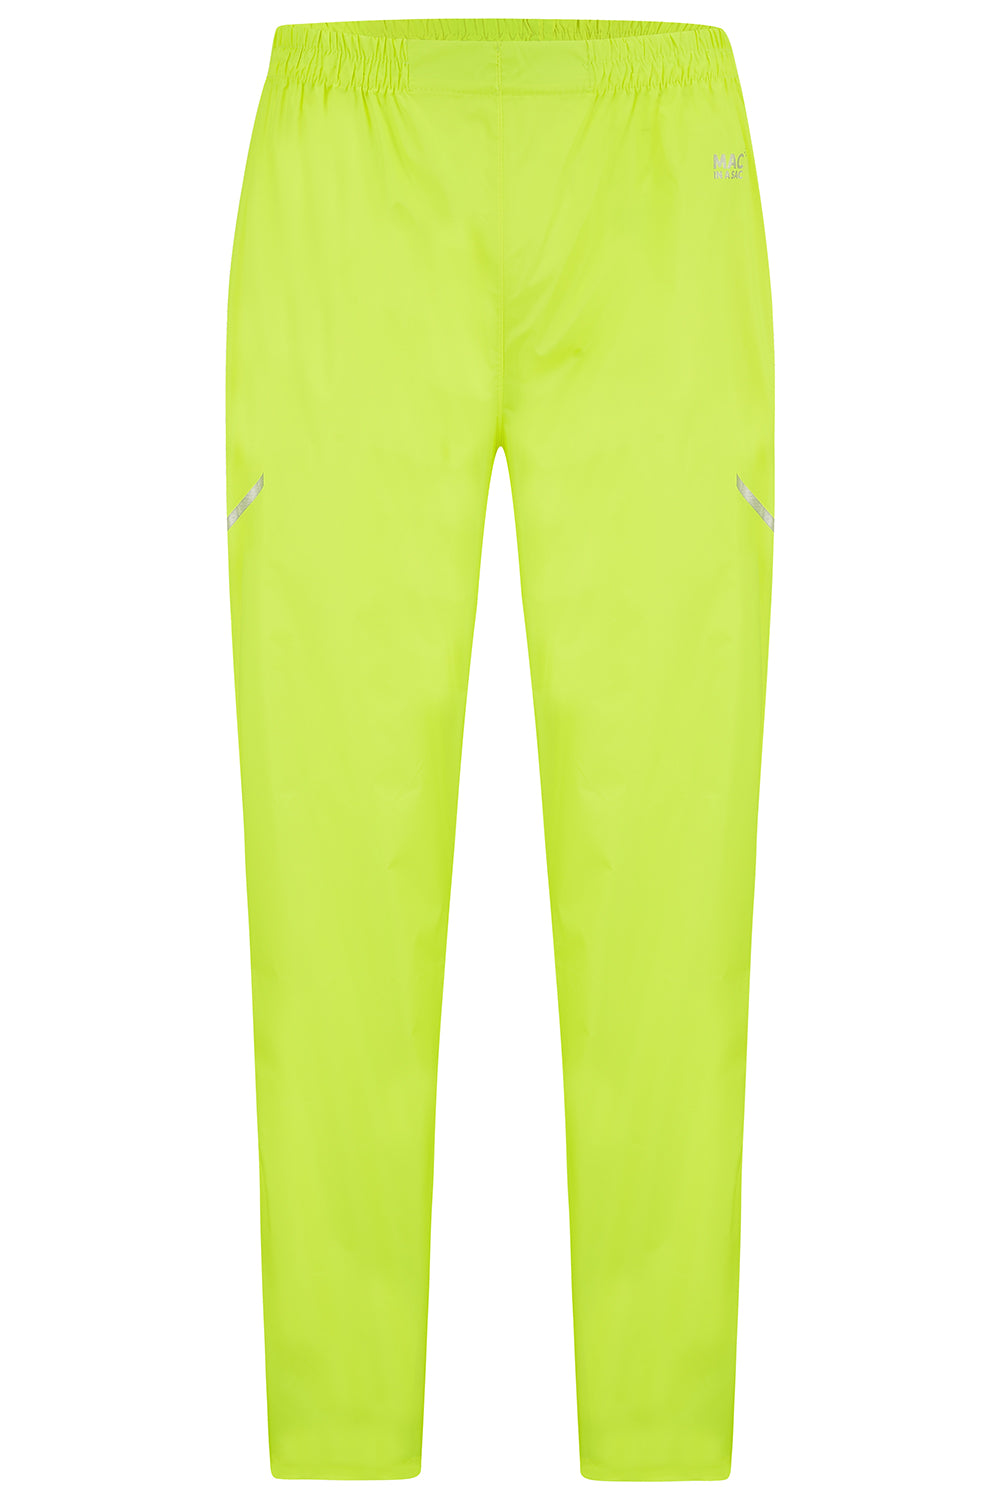 Origin Packable Full Zip Waterproof Overtrousers - Neon Yellow